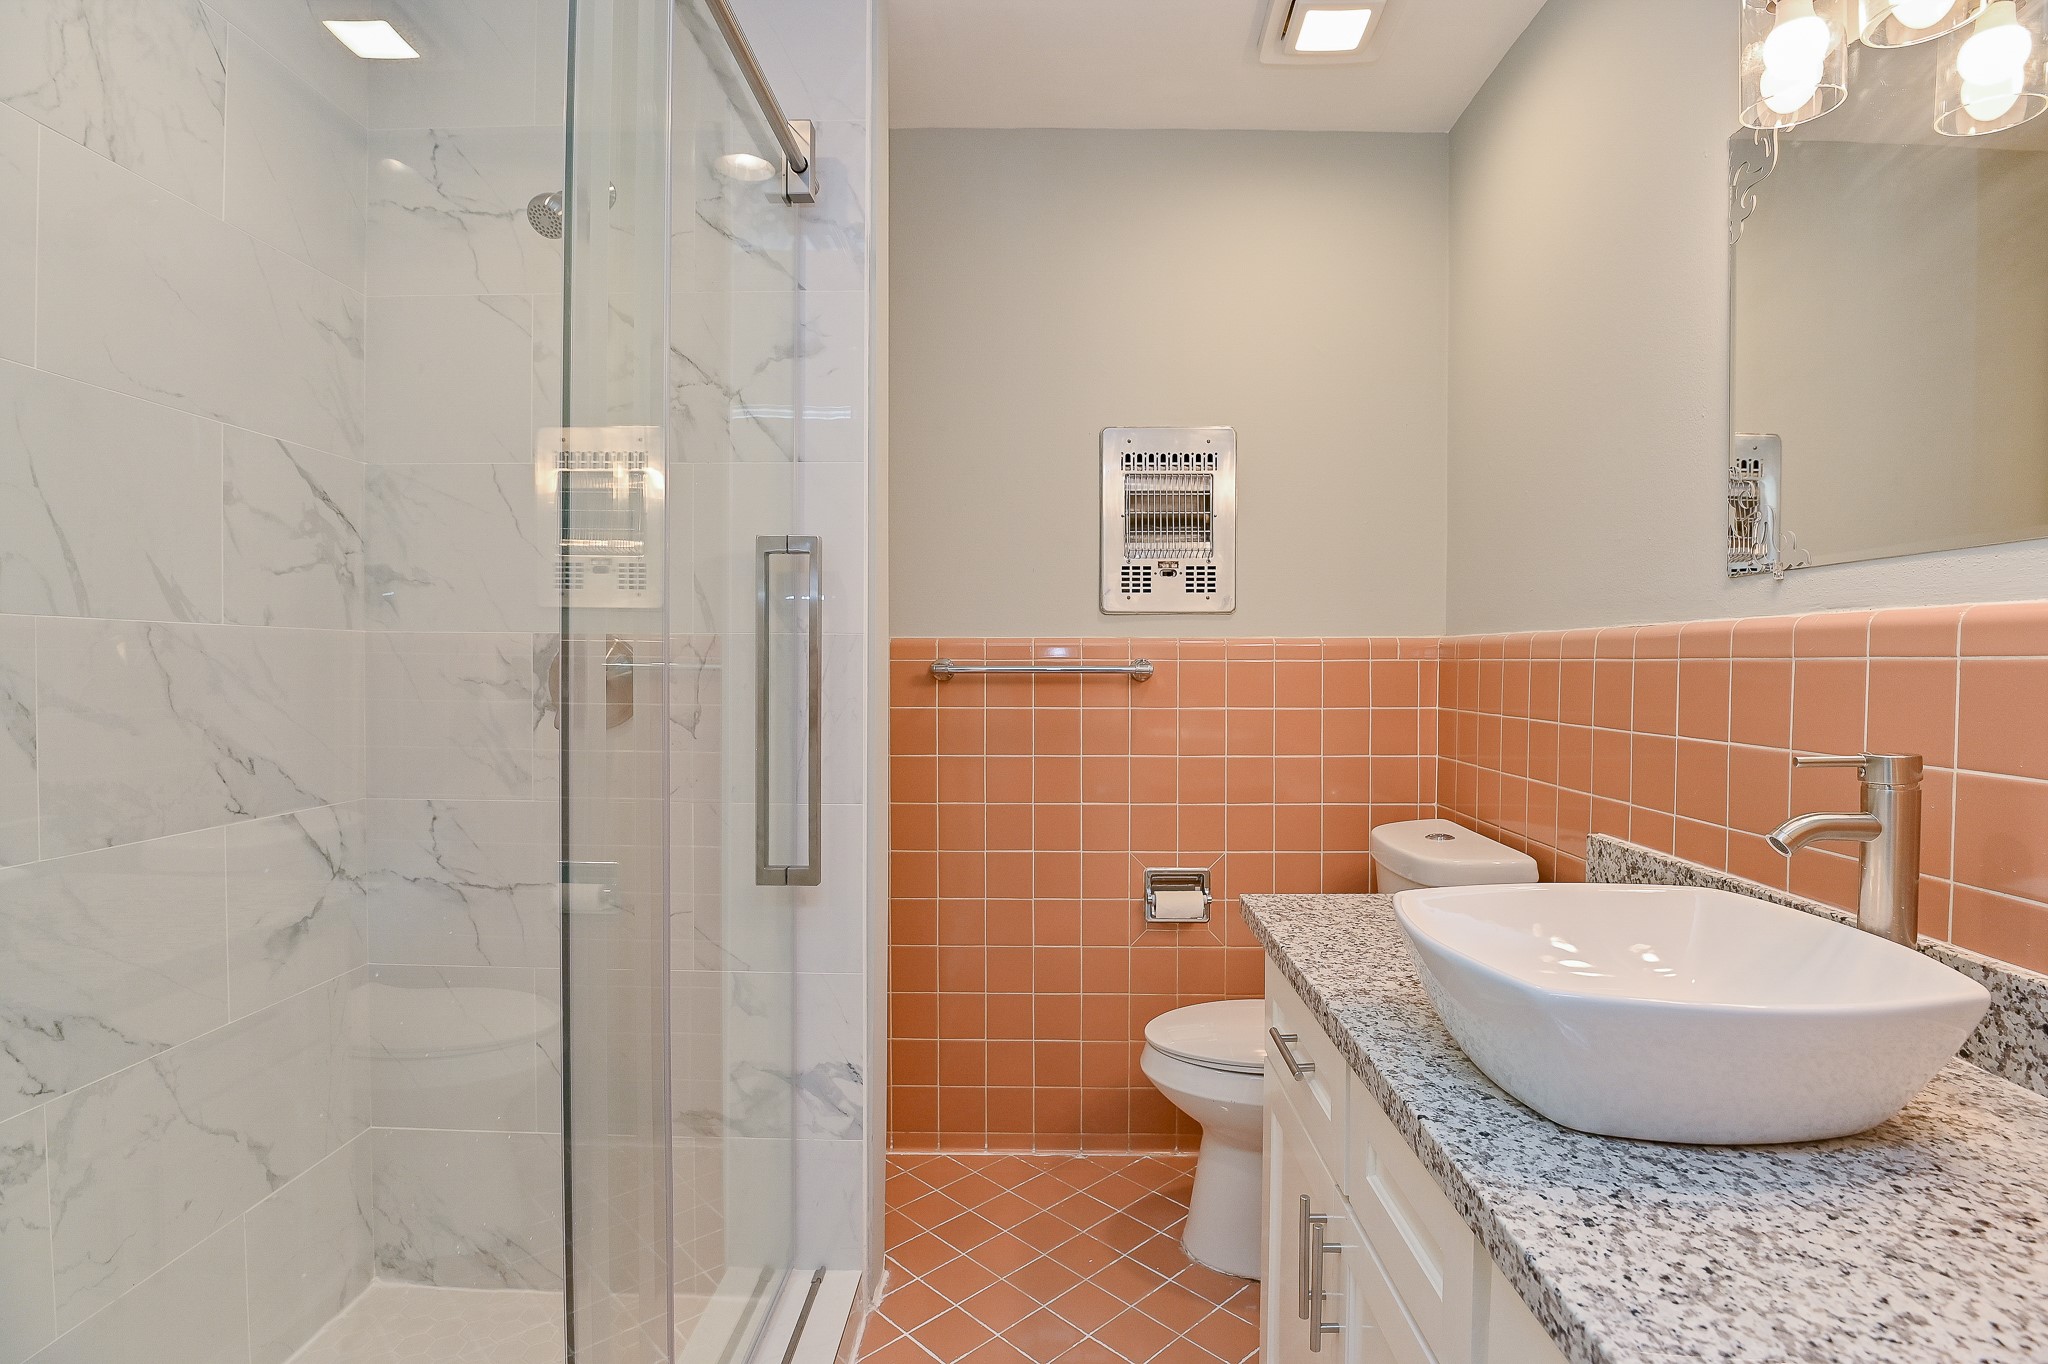 Primary bathroom with recent shower/sink/faucet/vanity/granite countertop/light fixtures.